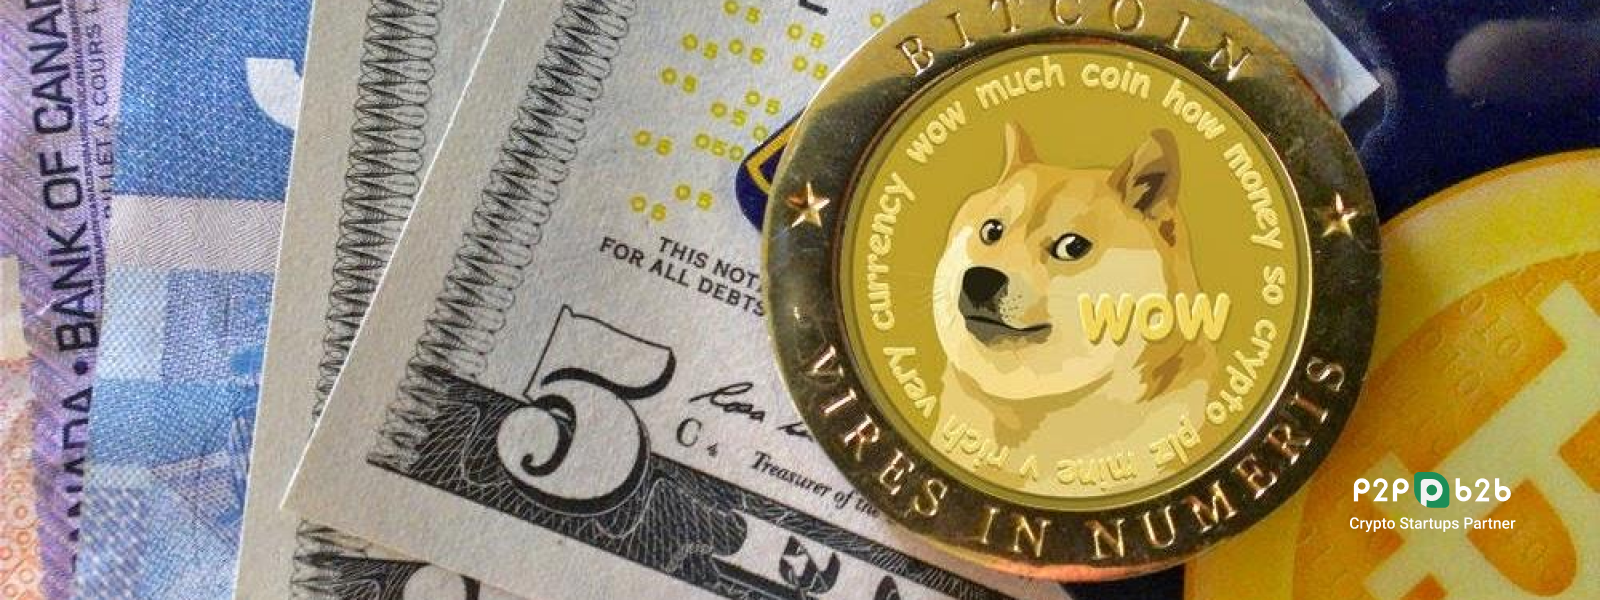 Покупка монеты Dogecoin